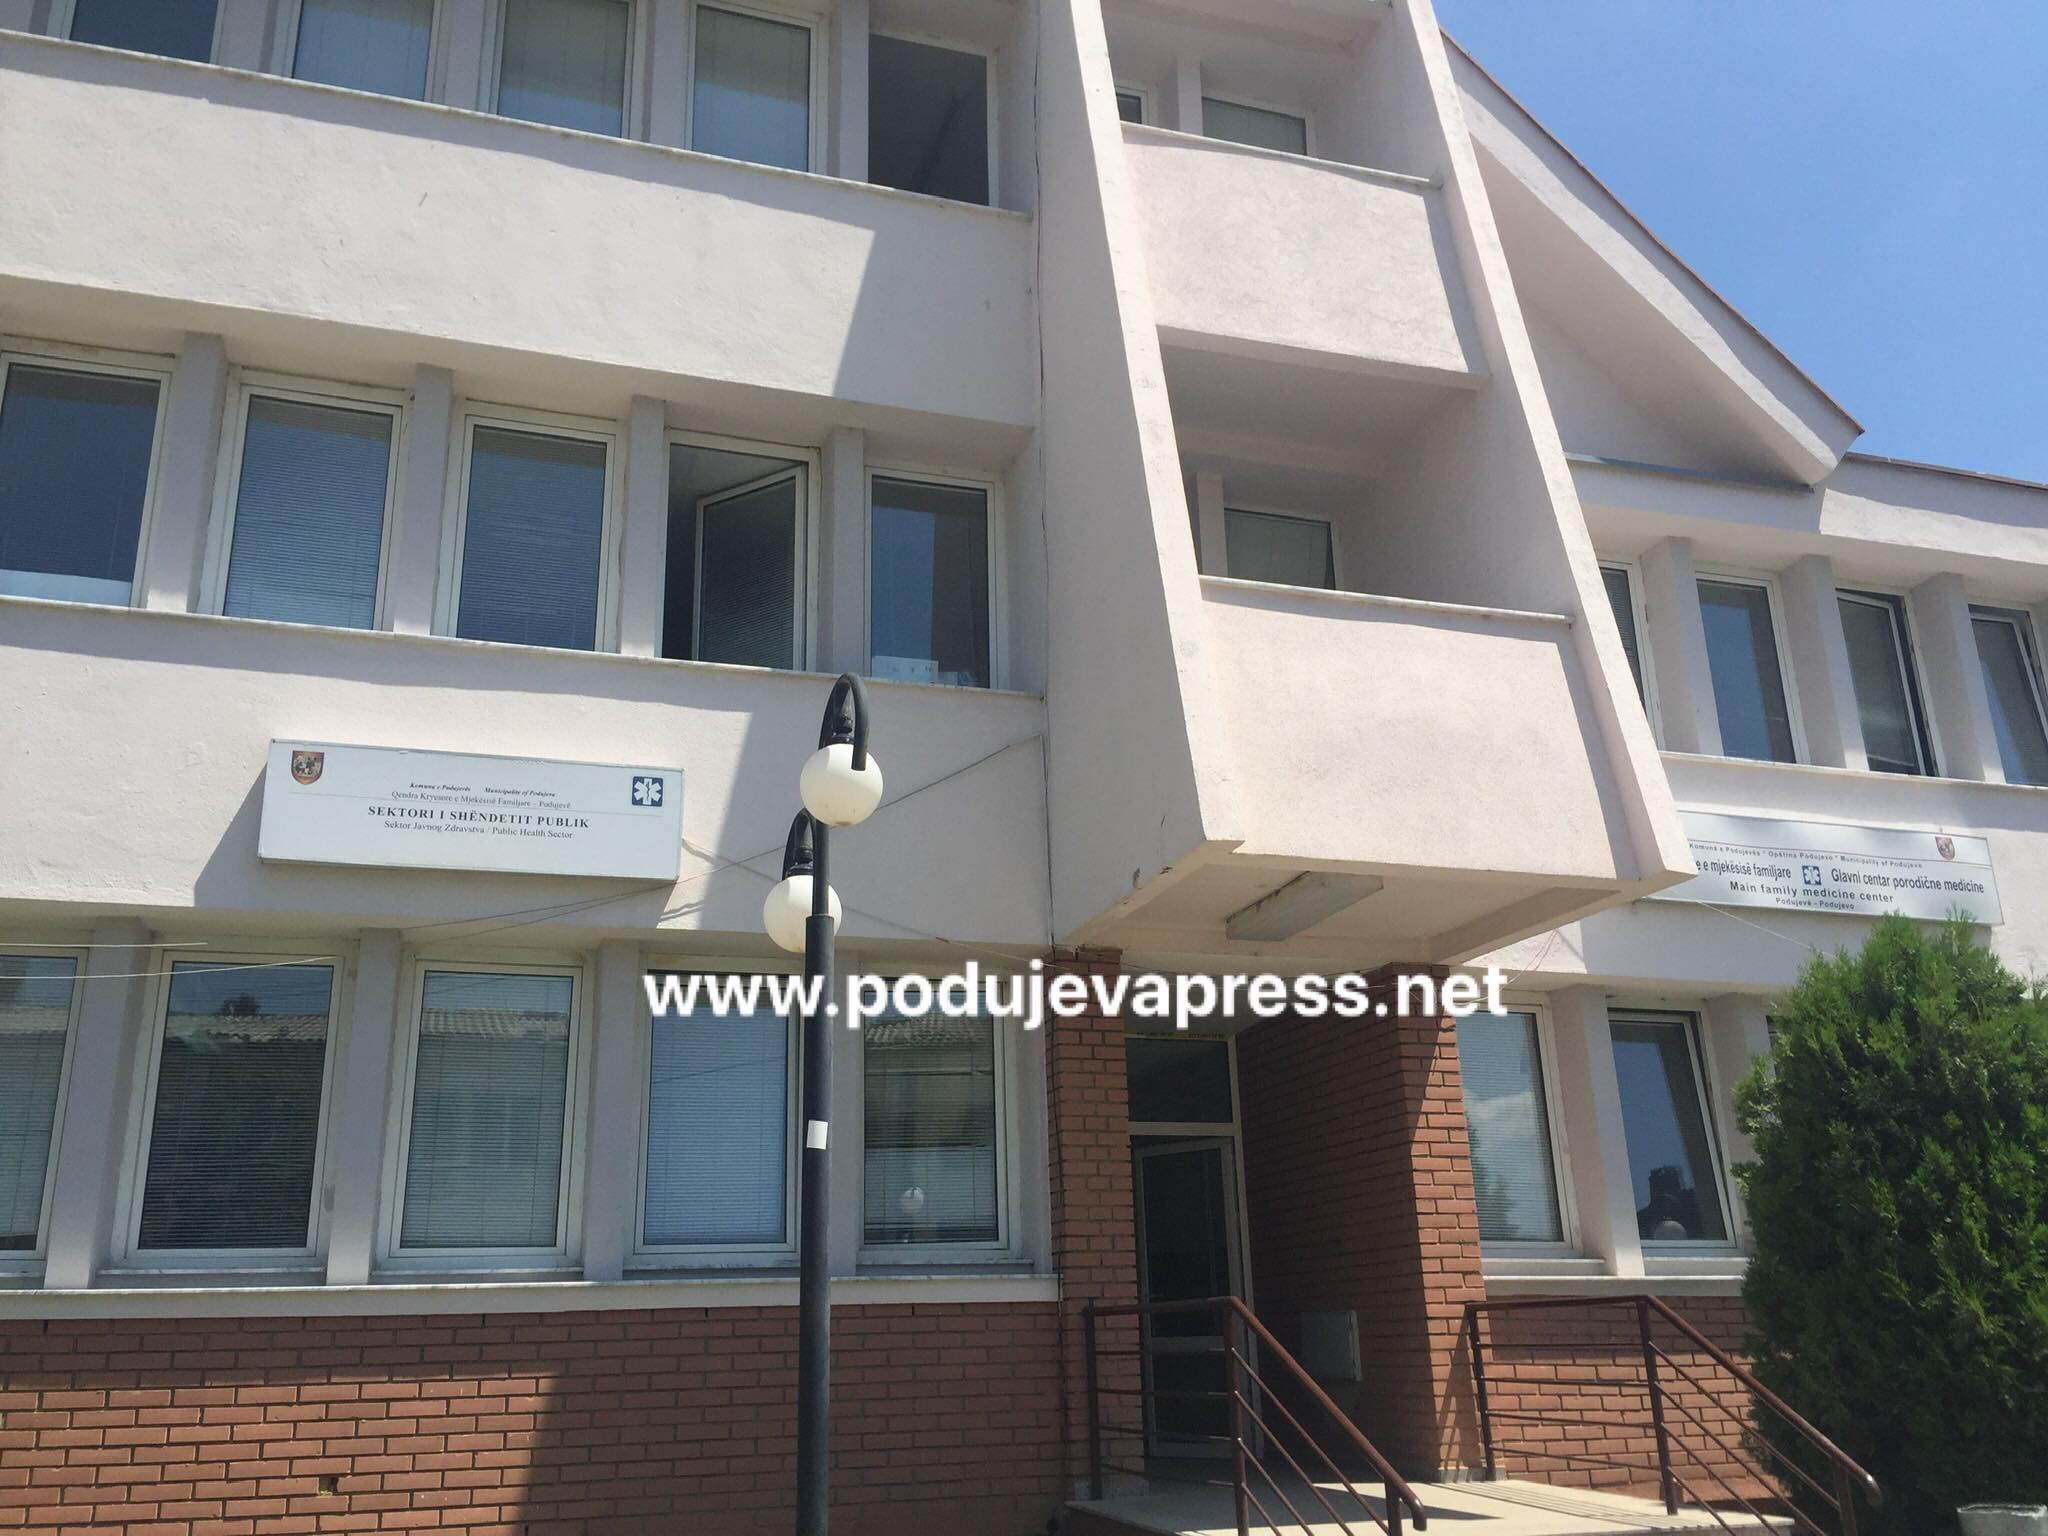  Komuna e Podujevës sot 12 raste të reja me COVID-19